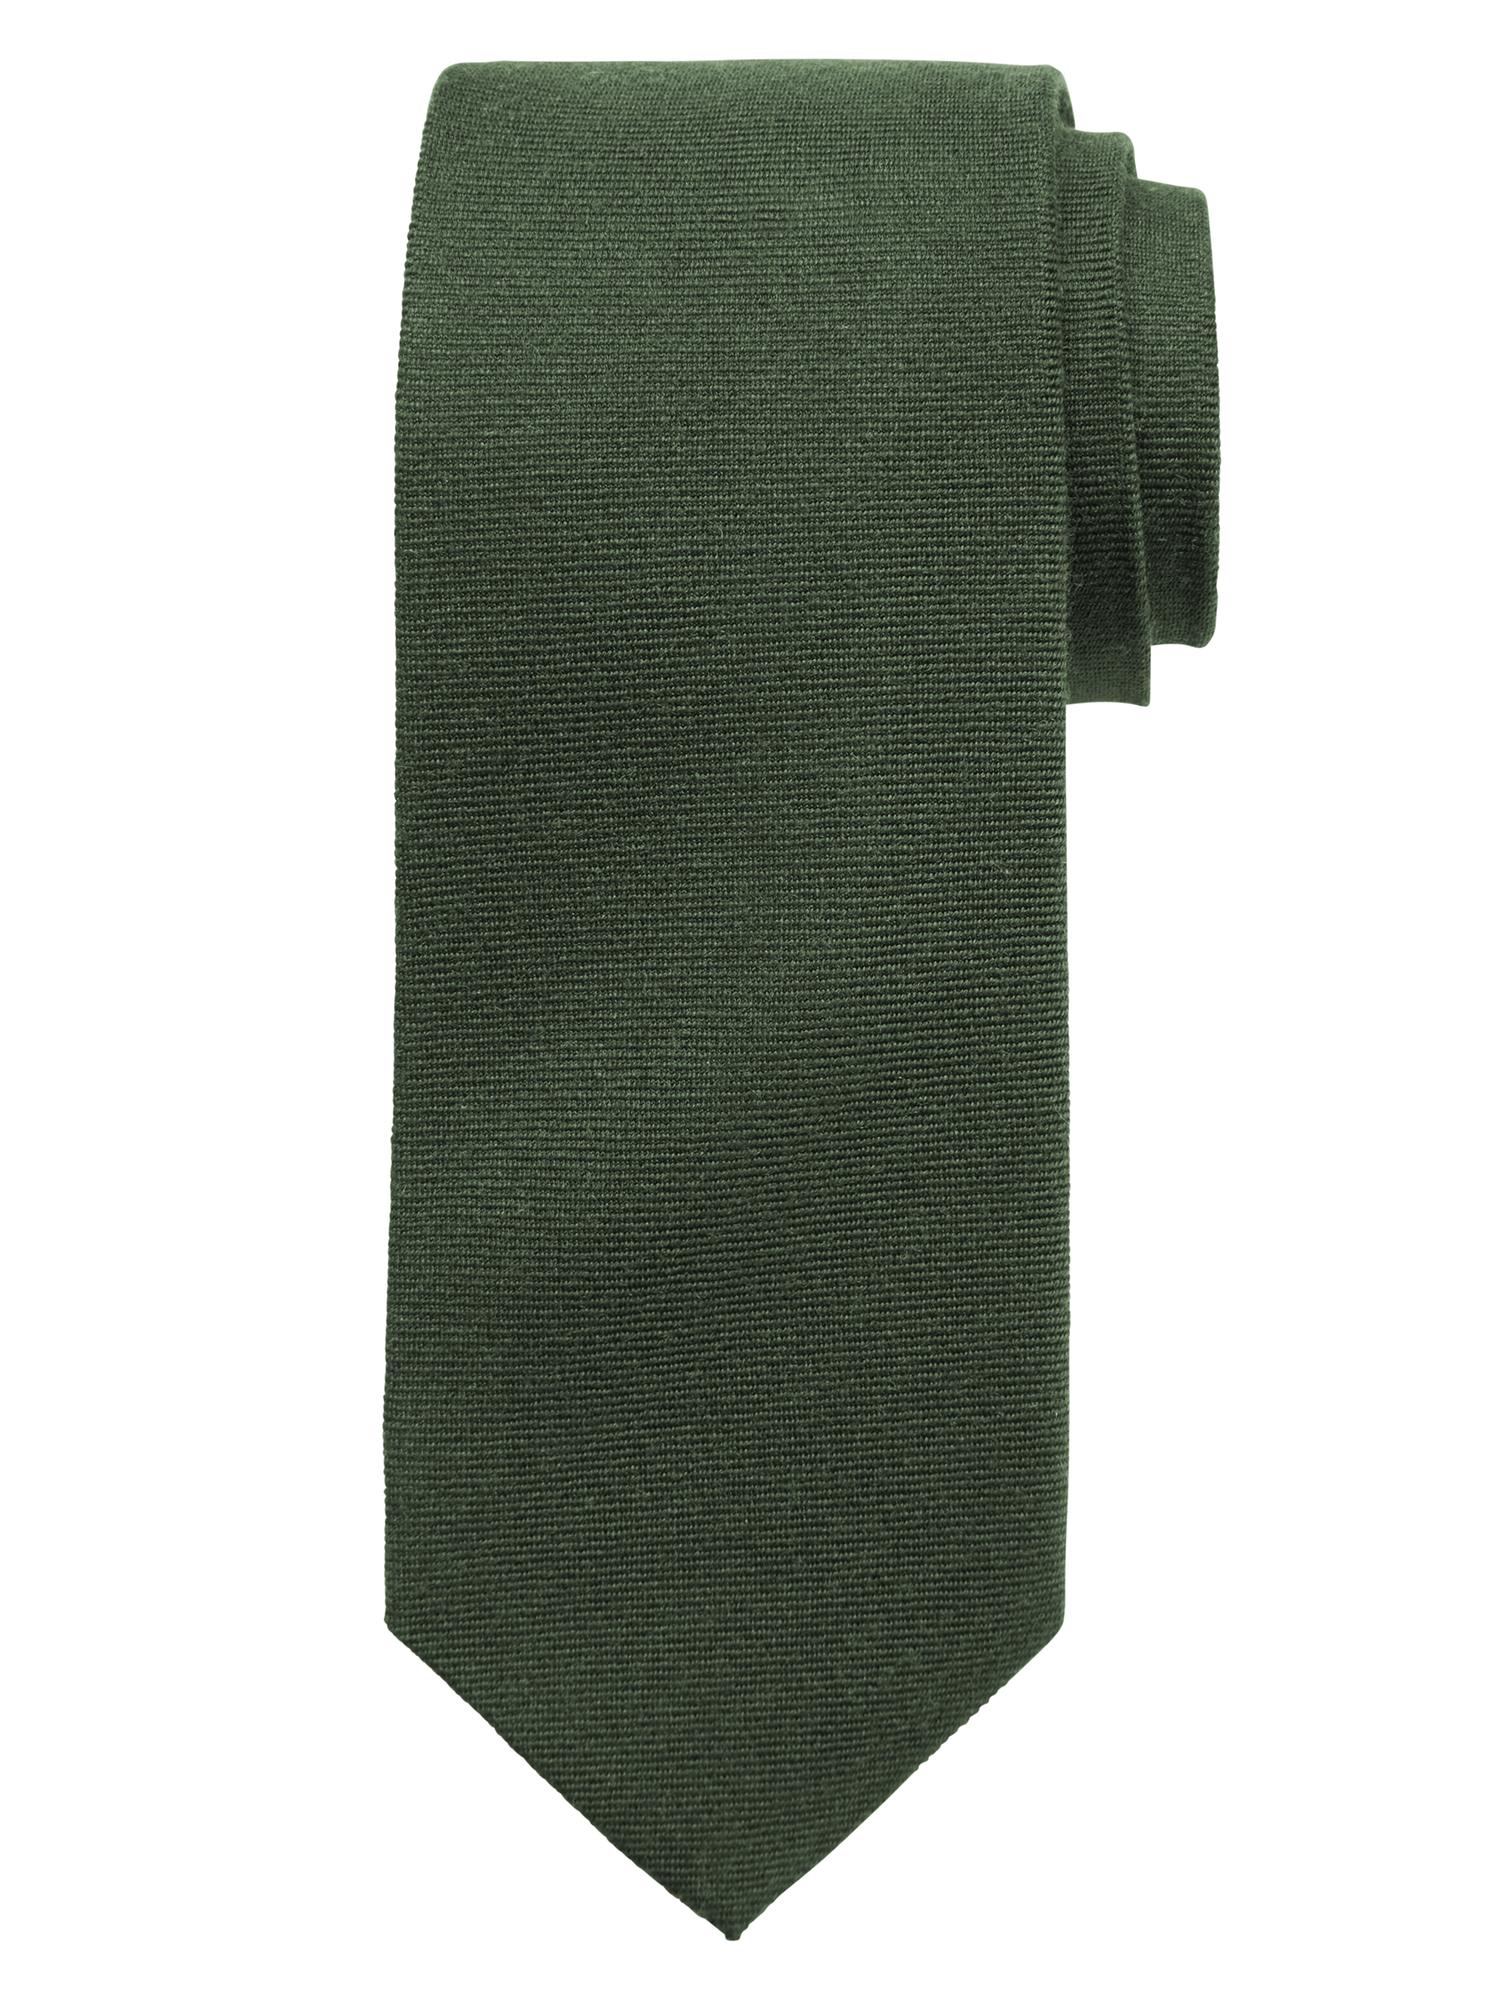 Green Wool/Silk Tie